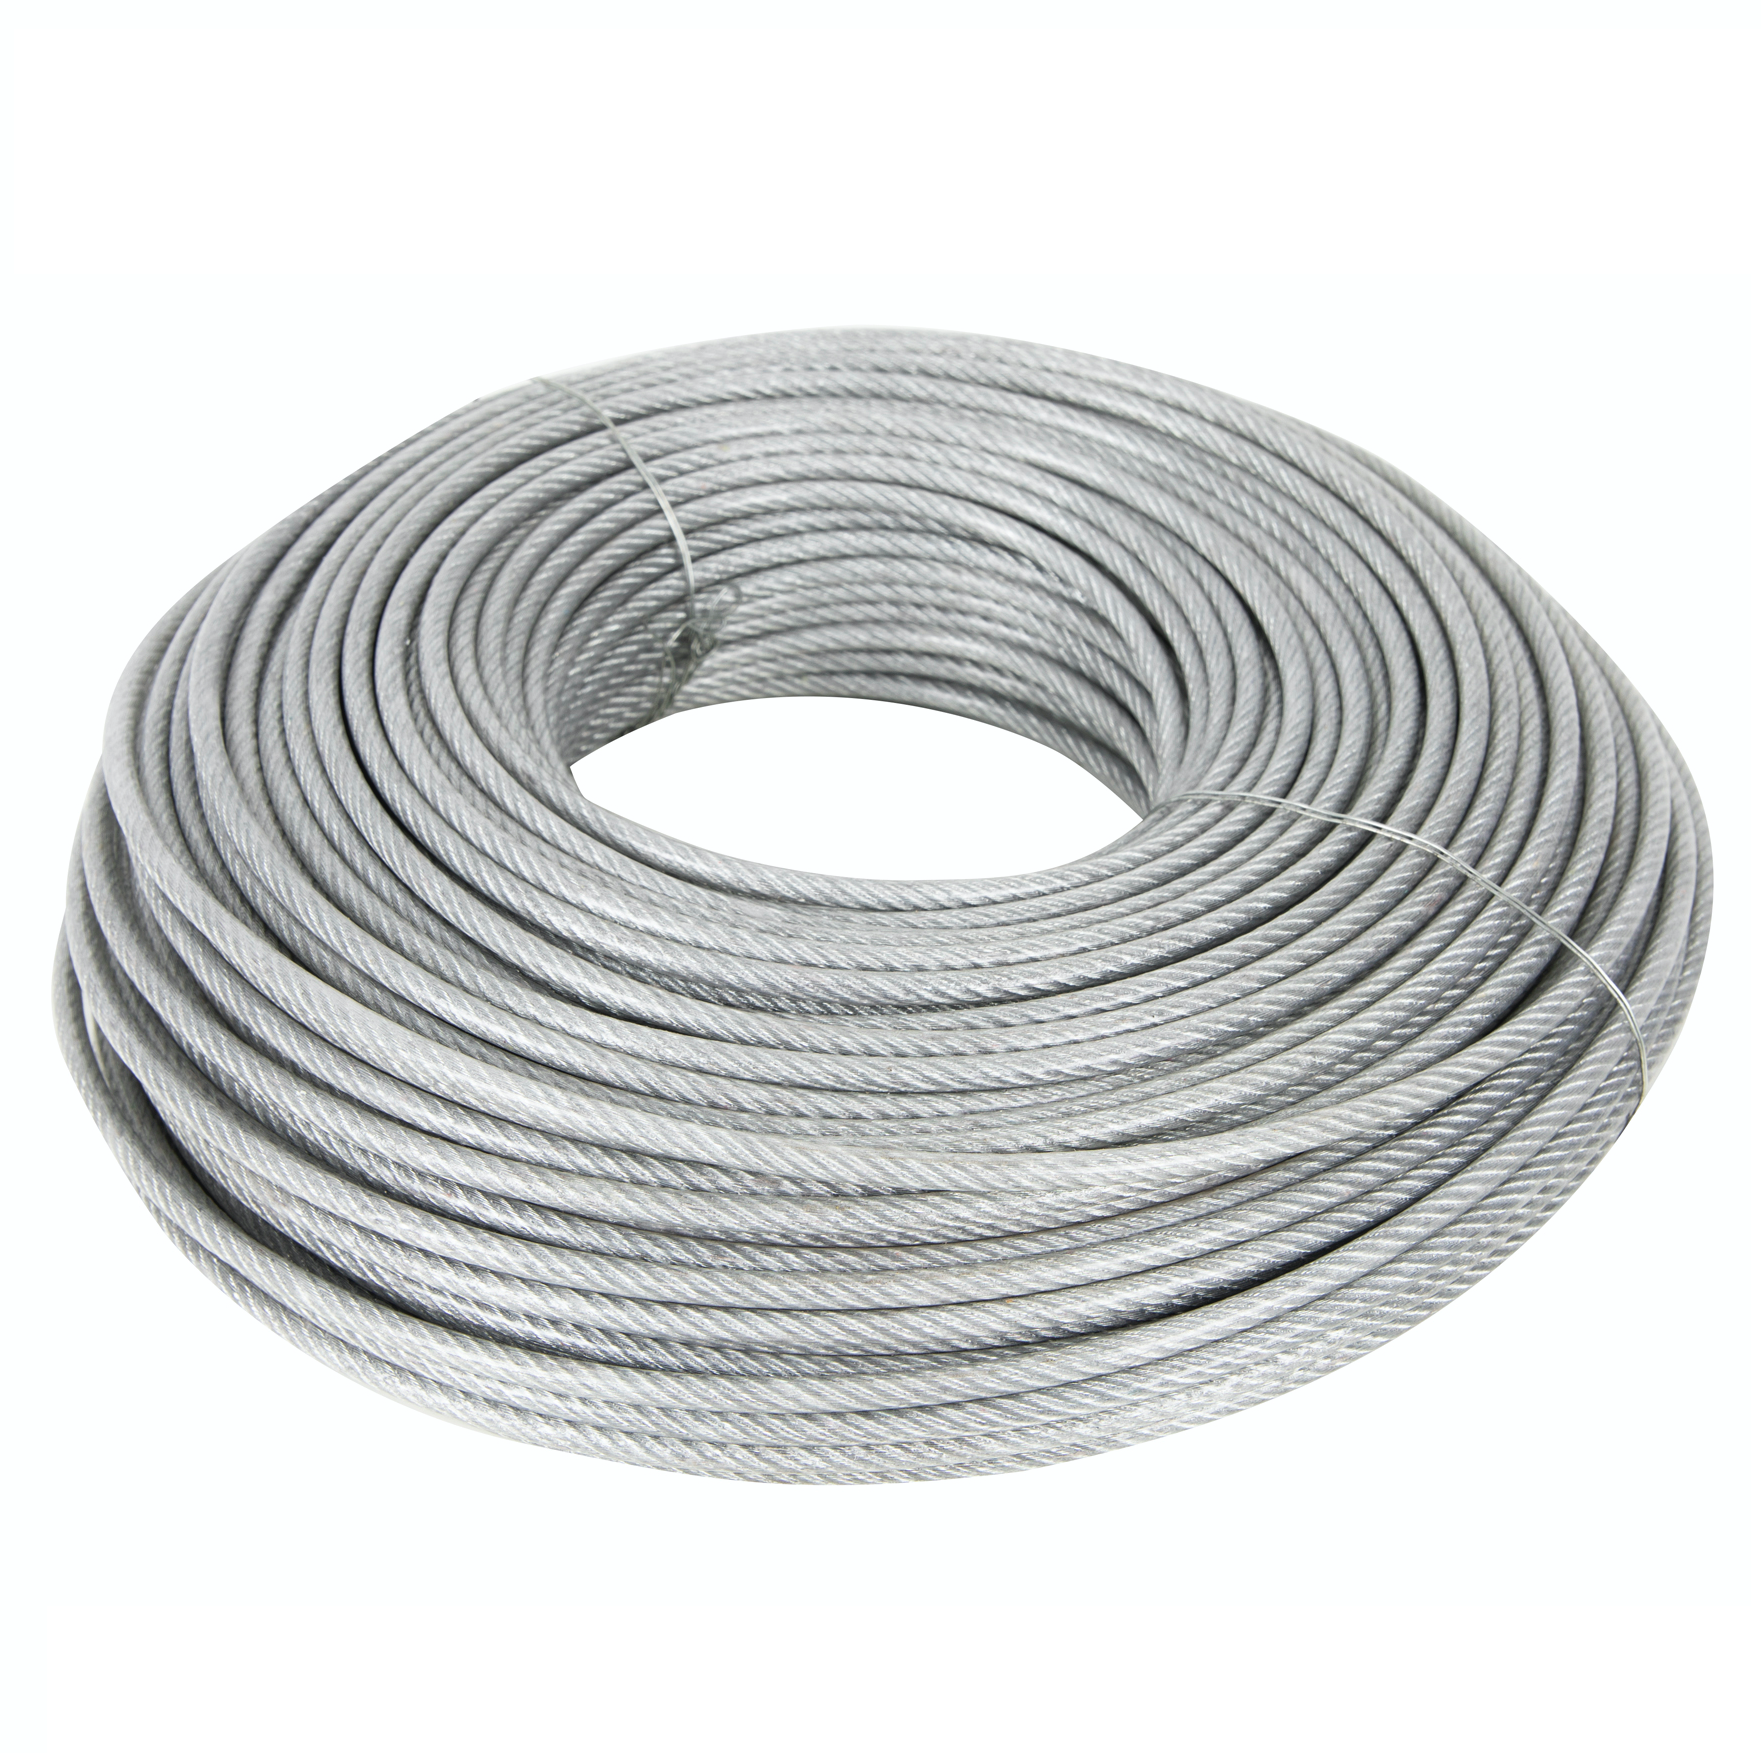 Cablu otel zincat plastifiat, grosime 5 MM, rola 100m, Liderman, sufa metalica